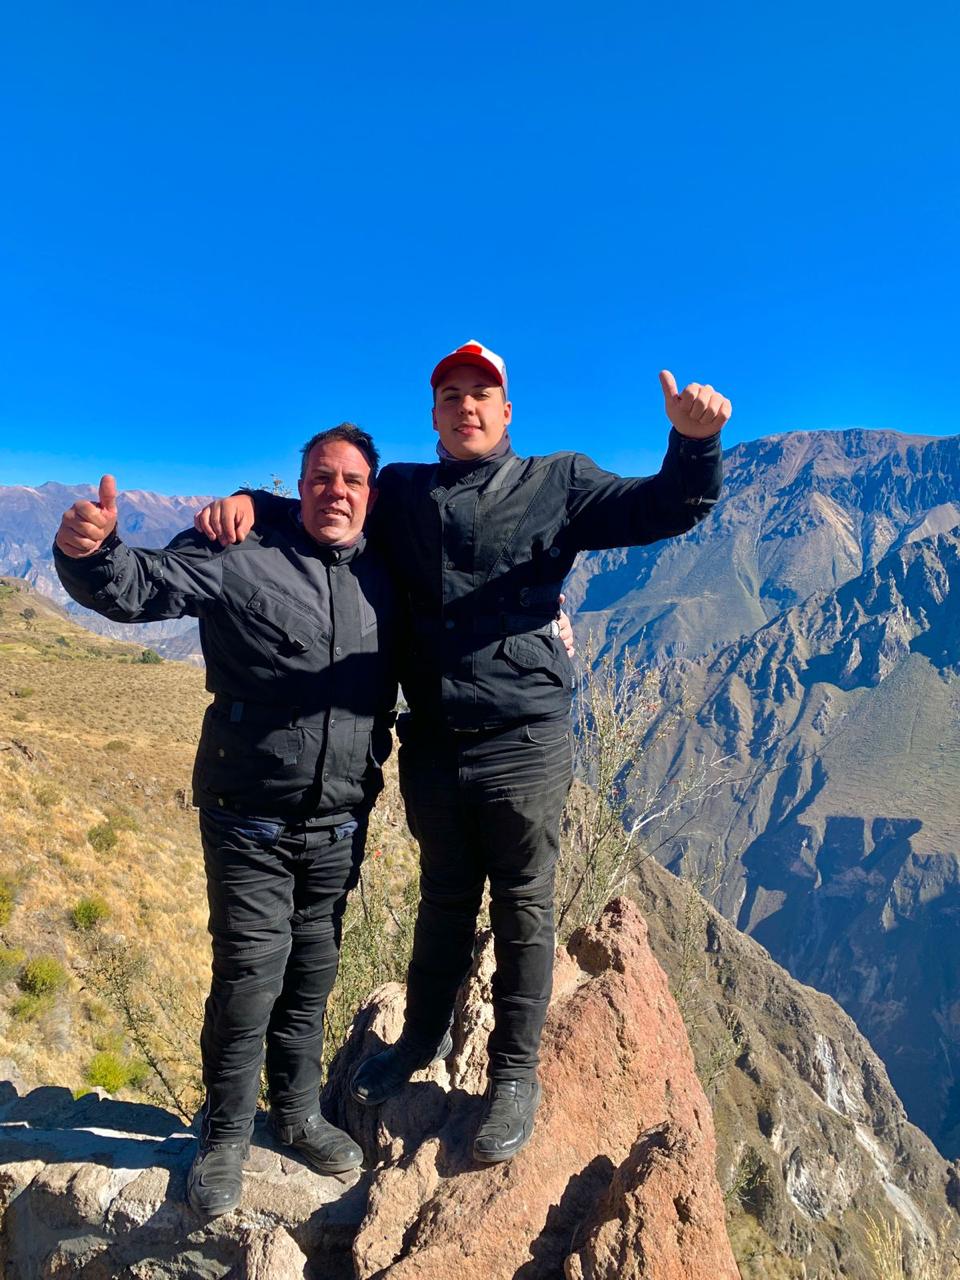 Padre e hijo en el cañón del Colca, Perú. Maxi Castagno dice que "es el viaje de nuestras vidas"